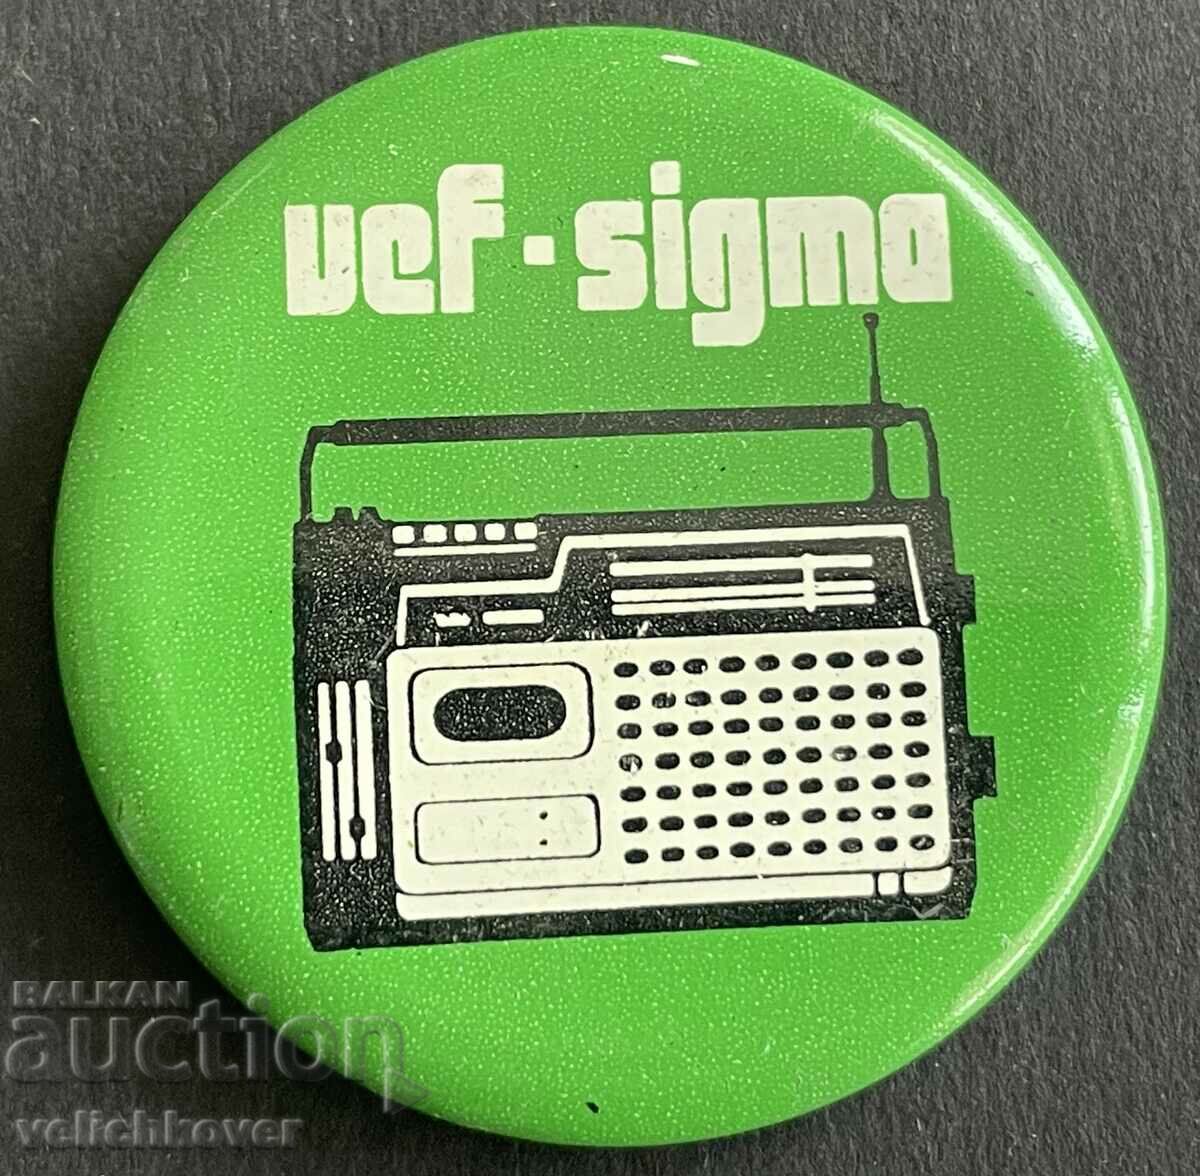 37413 СССР знак радио апарати ВЕФ VEF  и  Сигма Sigma